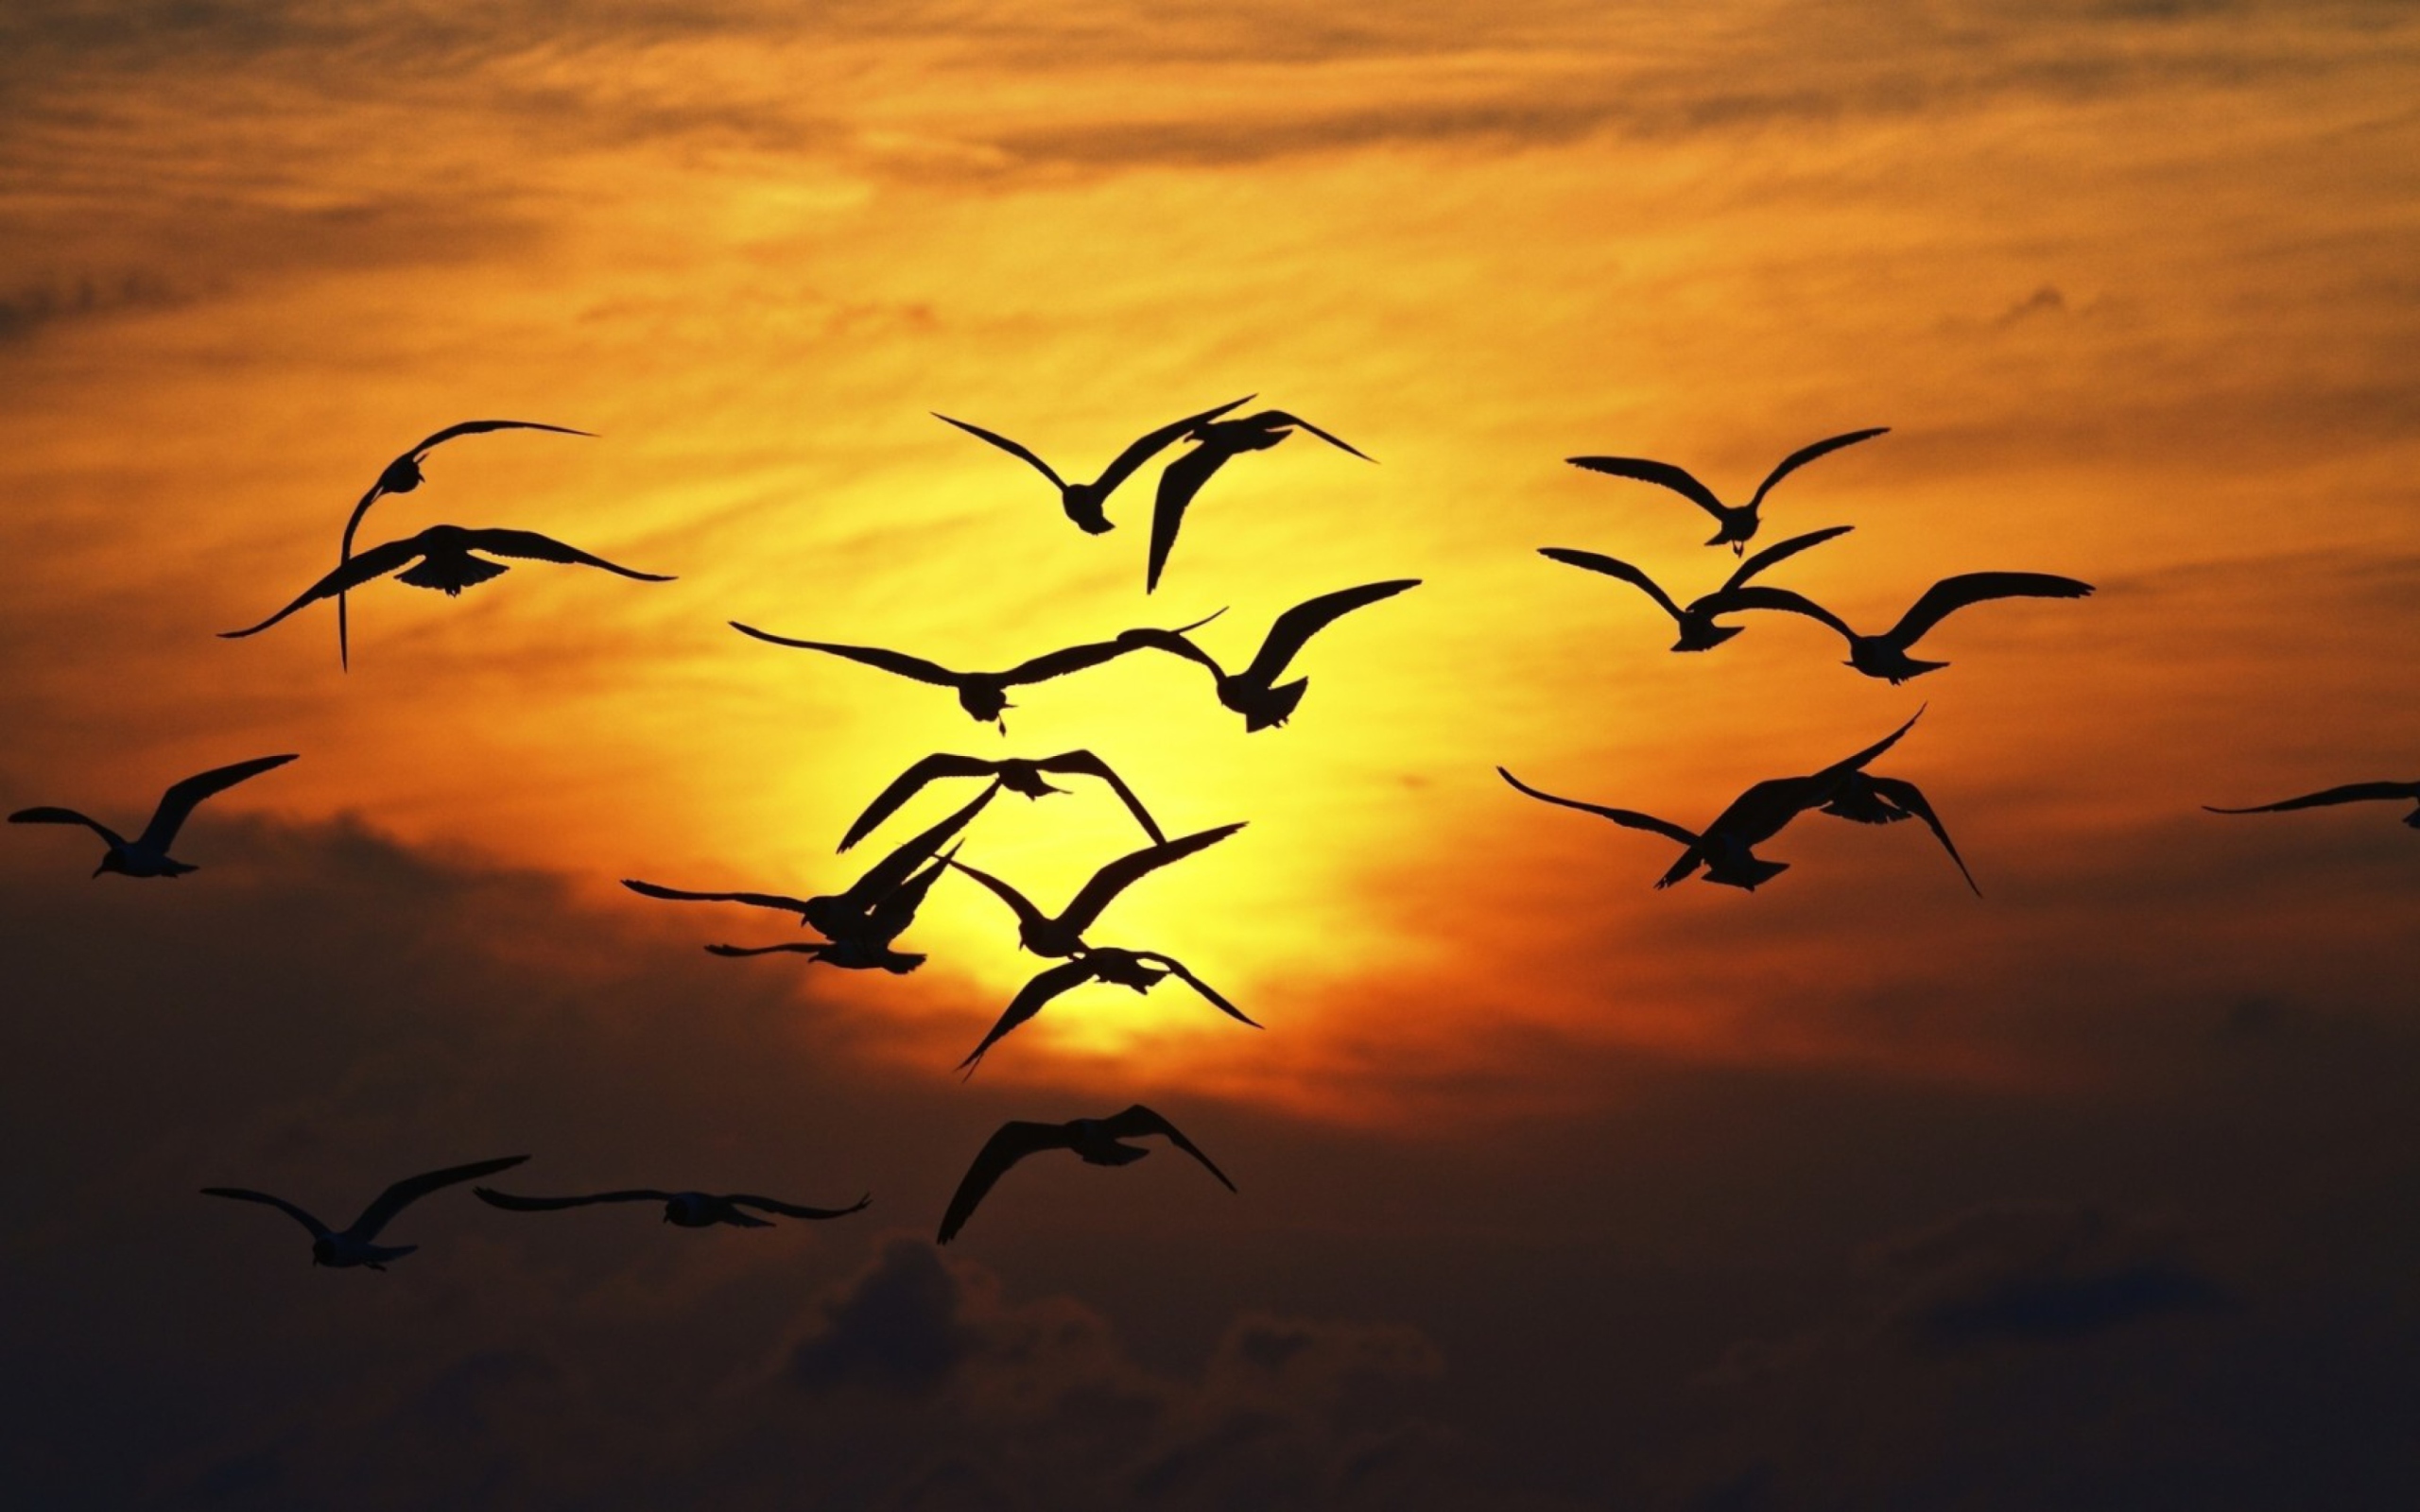 Sunset Birds wallpaper 2560x1600